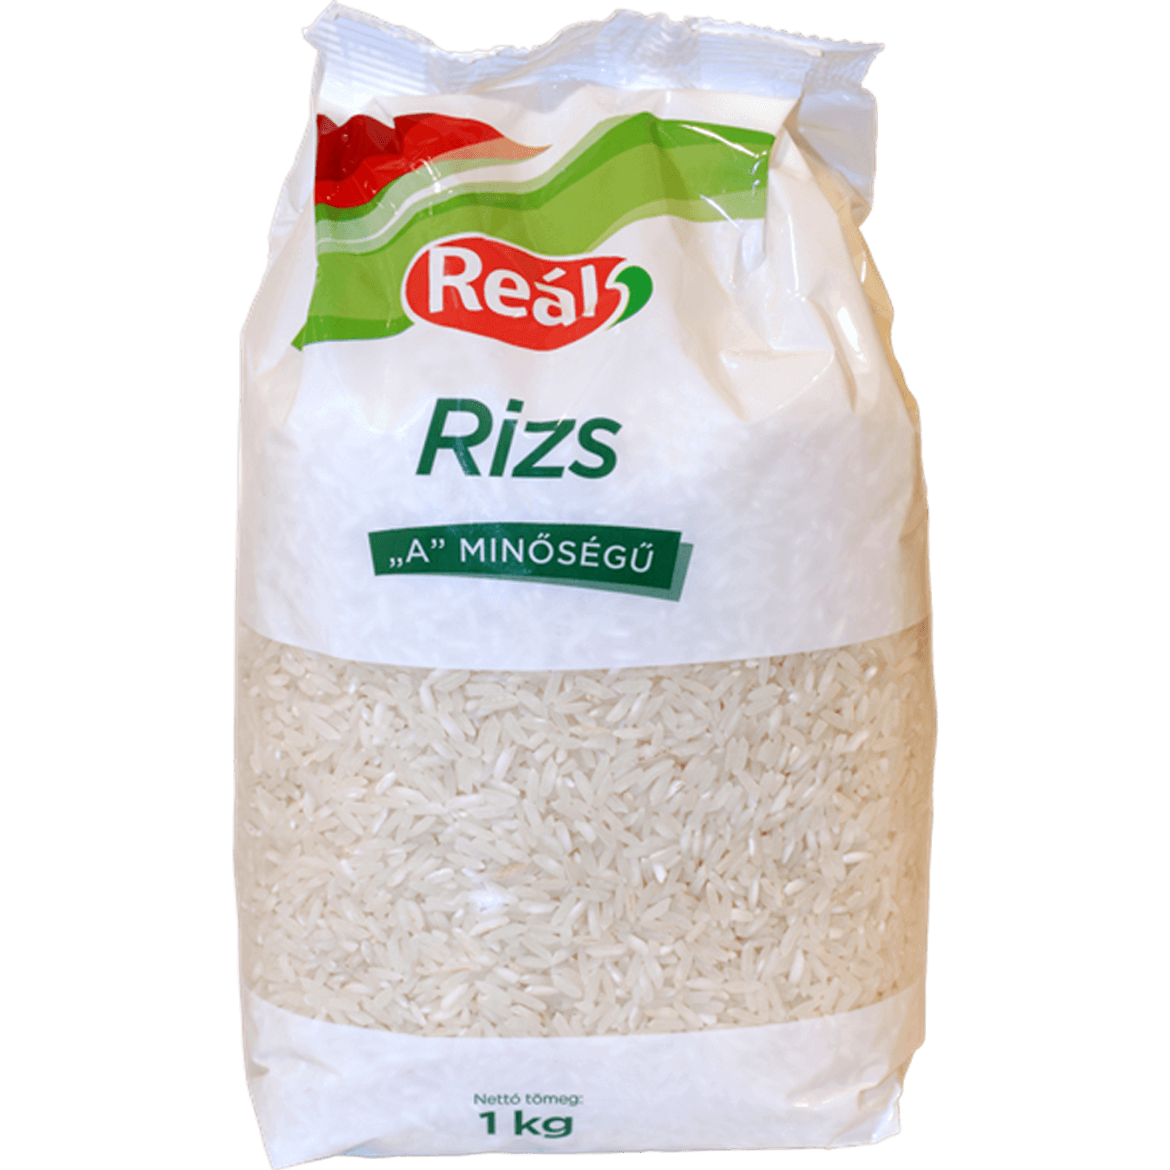 Reál rizs A állótasakos Nagykun